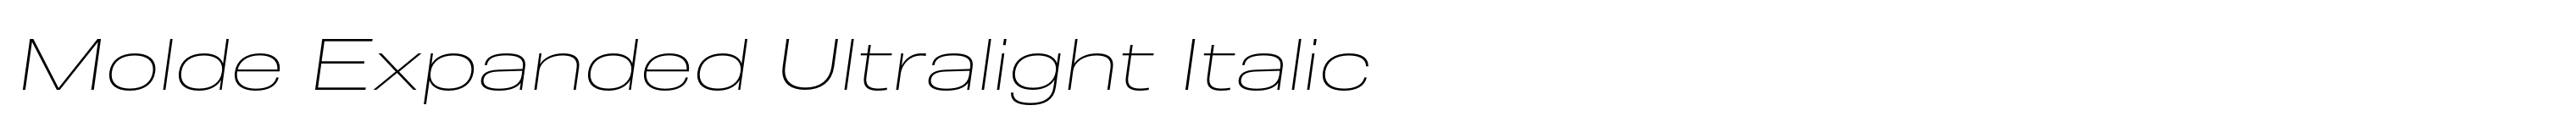 Molde Expanded Ultralight Italic